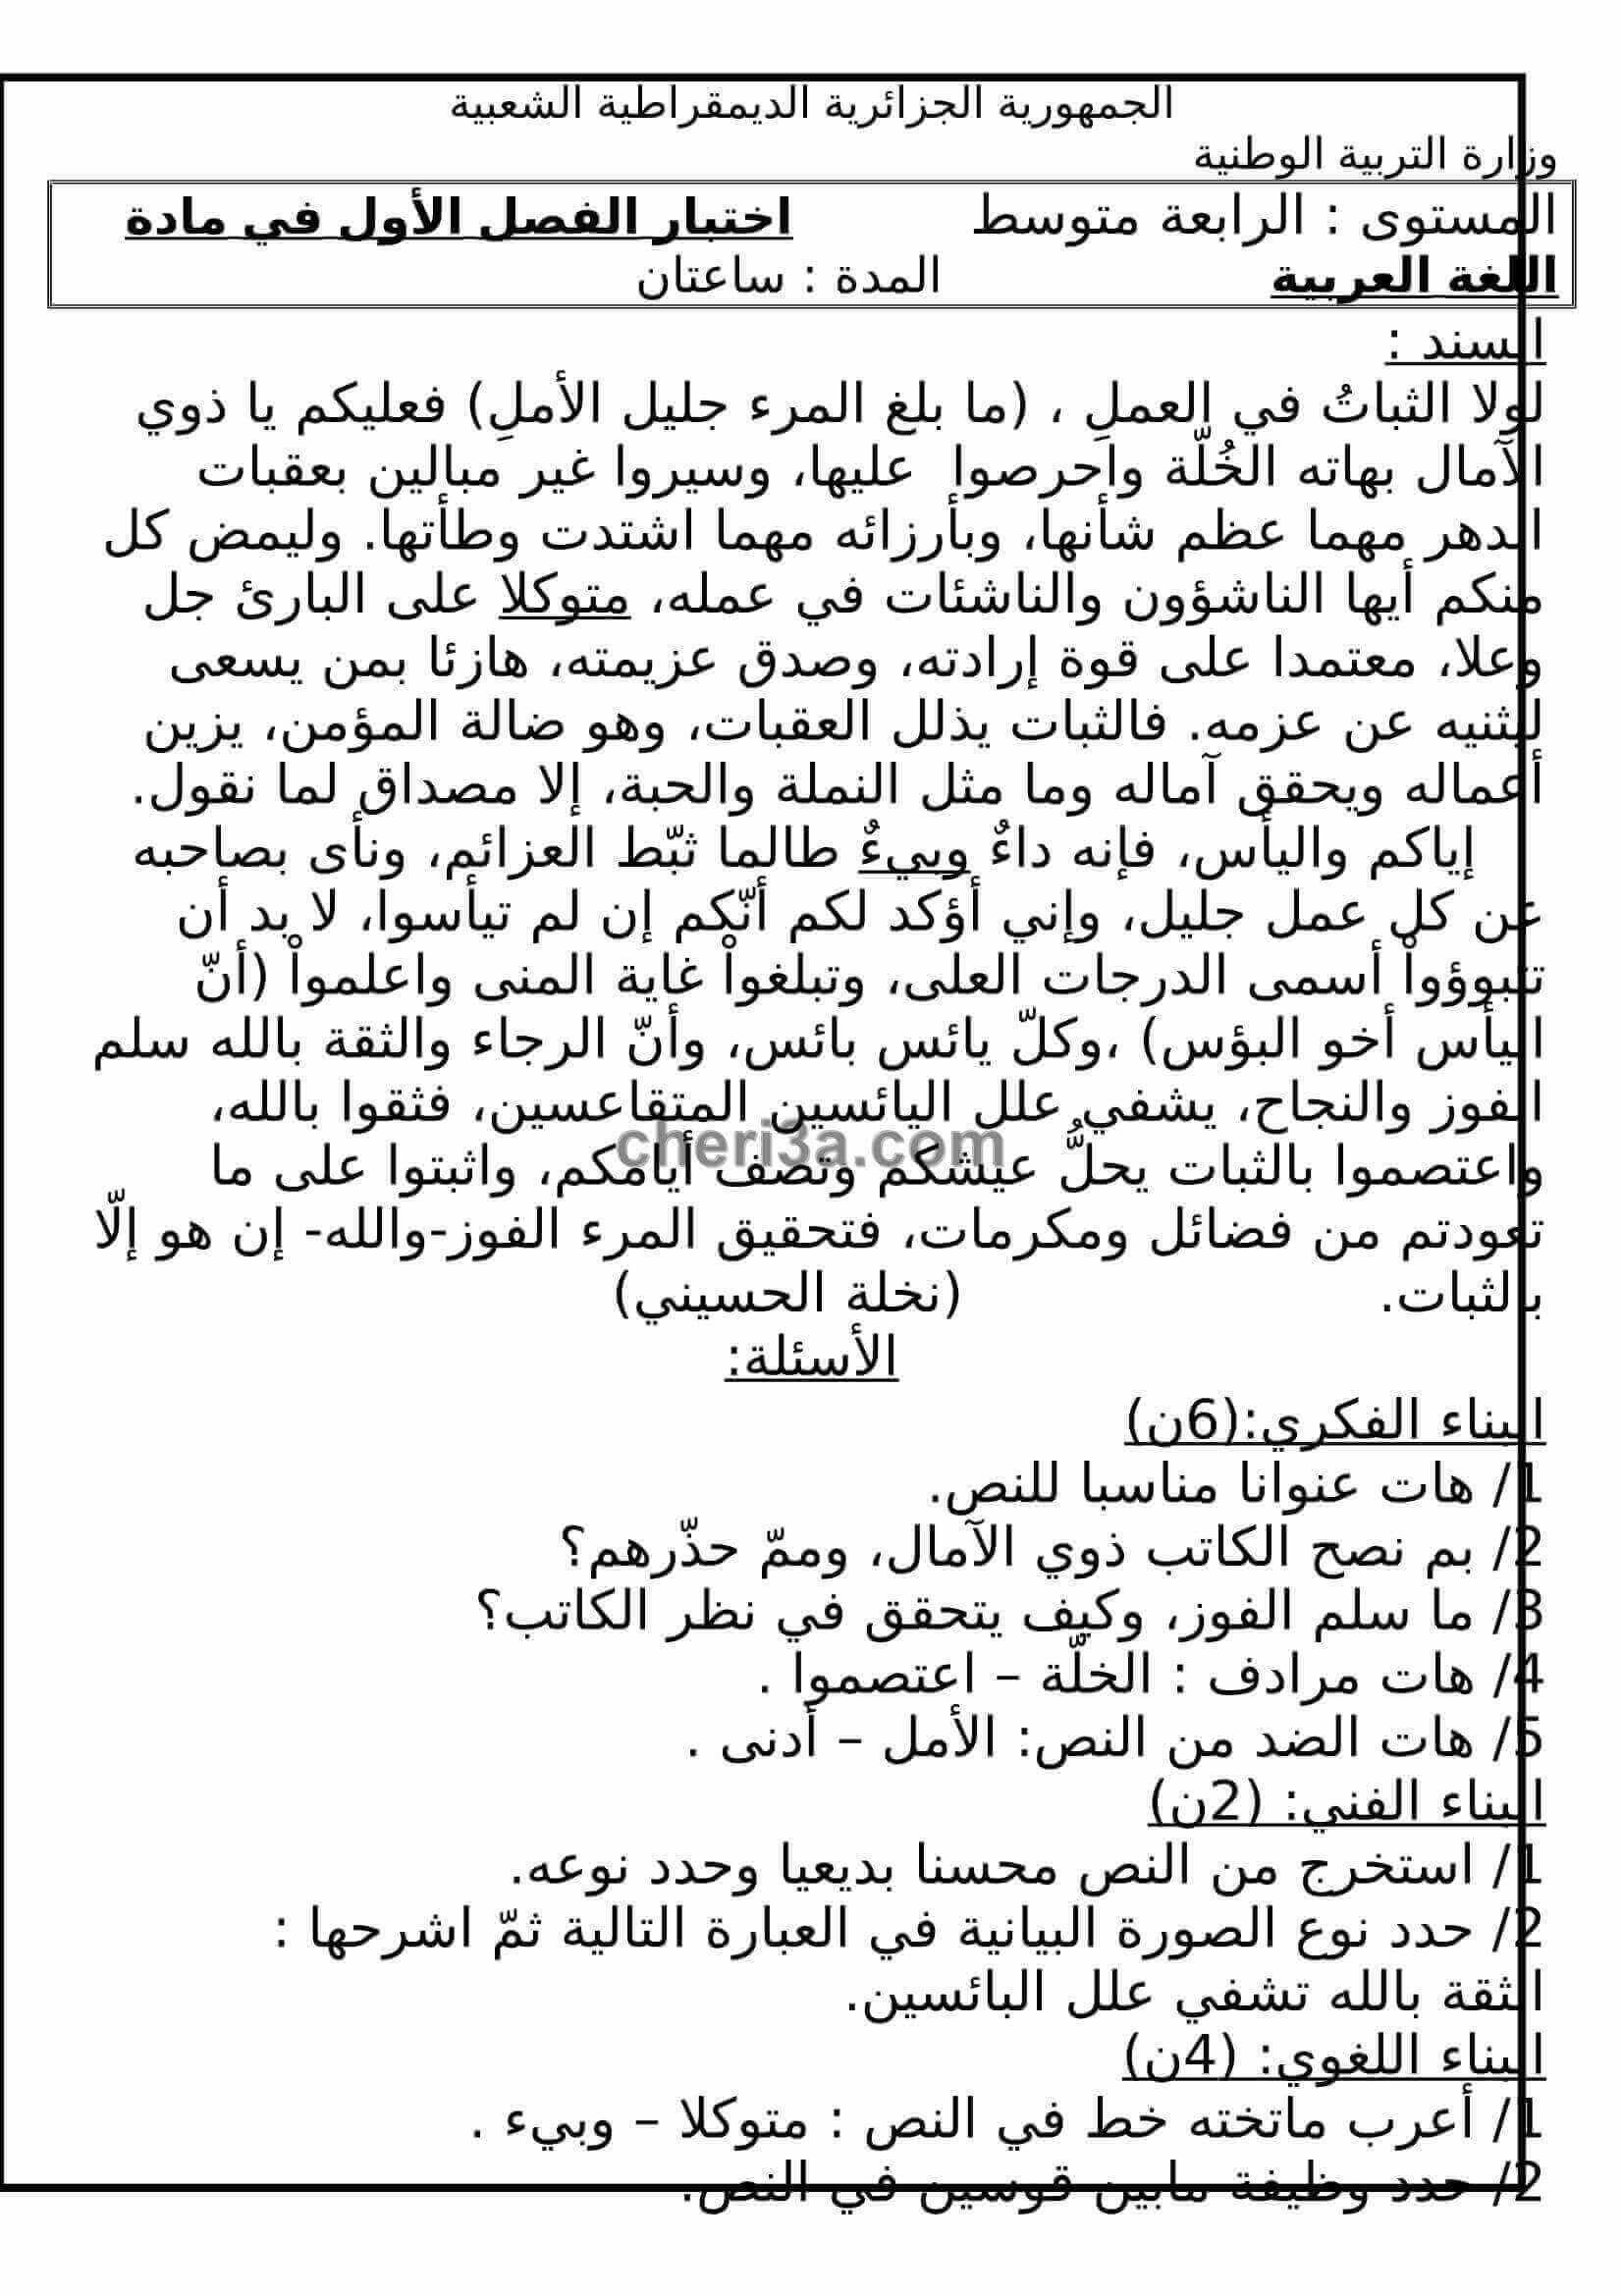 اختبار الفصل الاول للسنة الرابعة متوسط في اللغة العربية النموذج 5